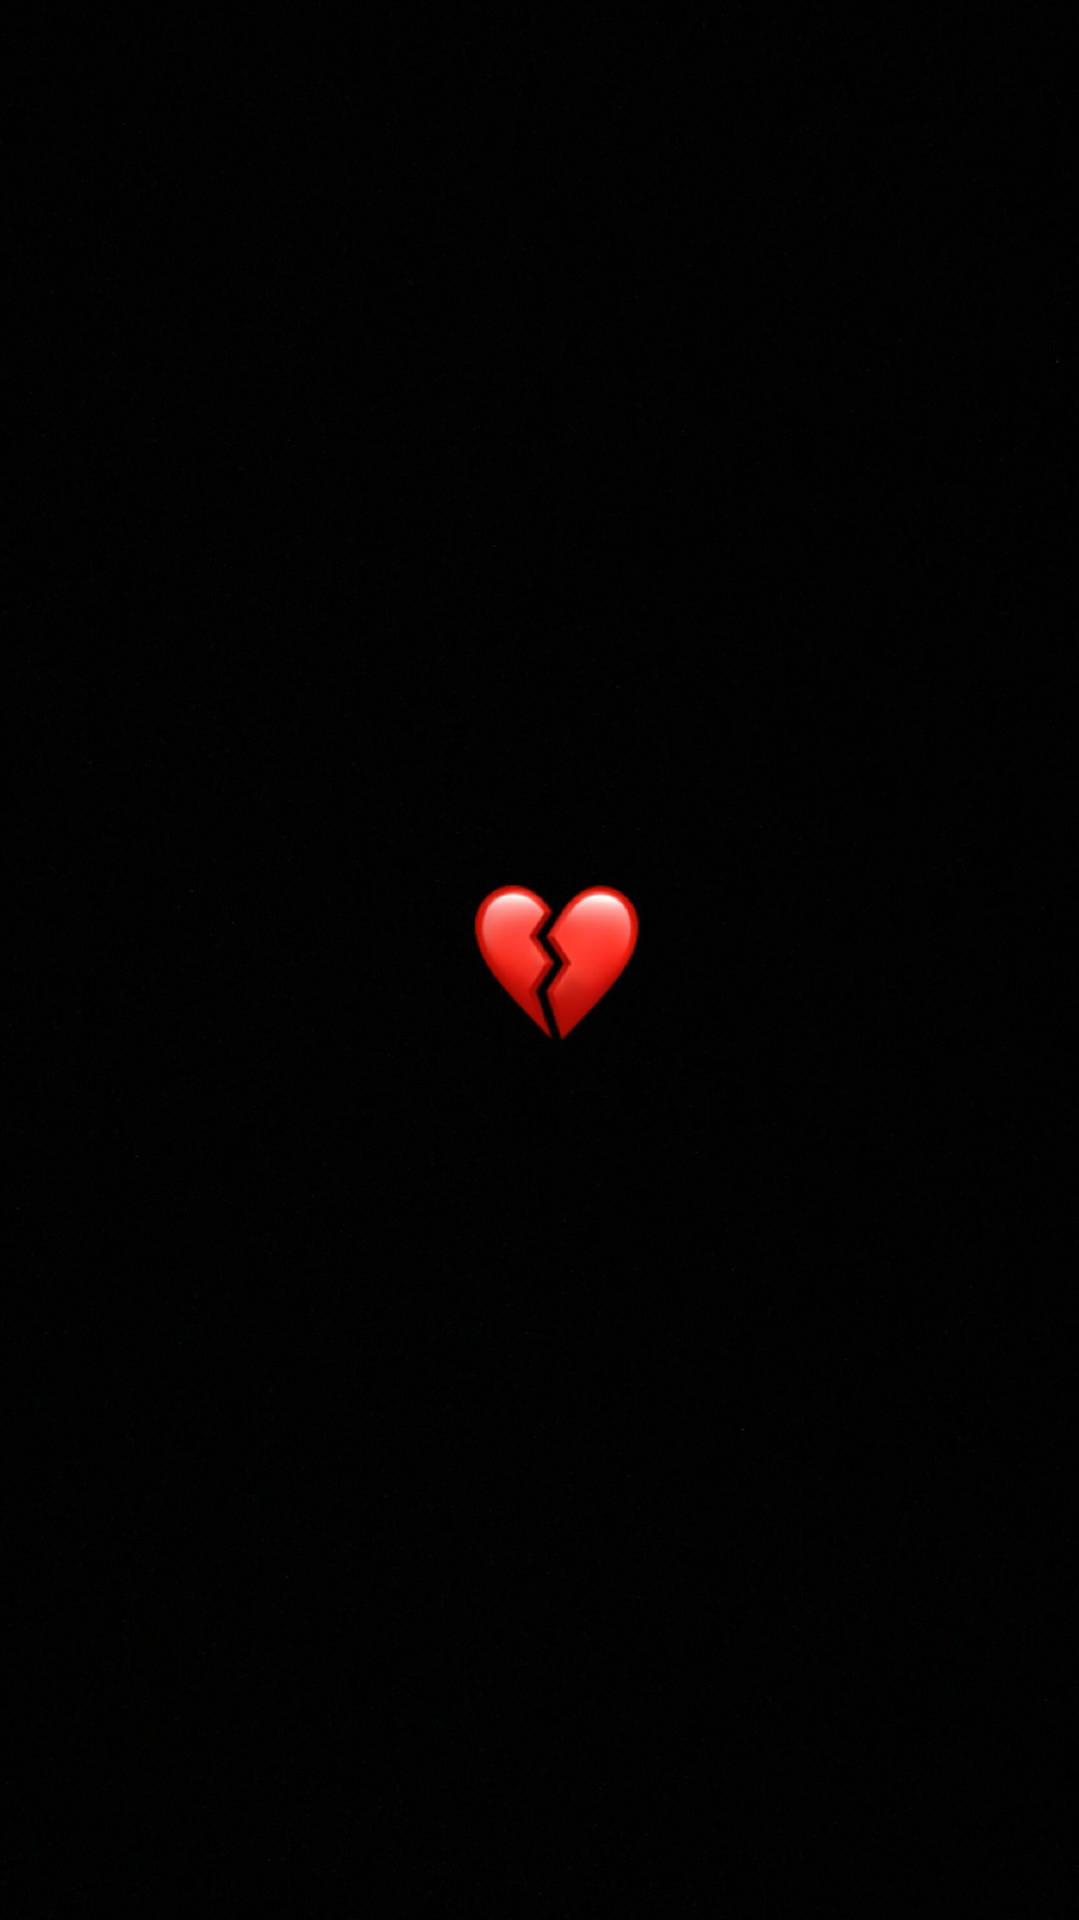 Download Minimalistic Red Broken Heart Wallpaper